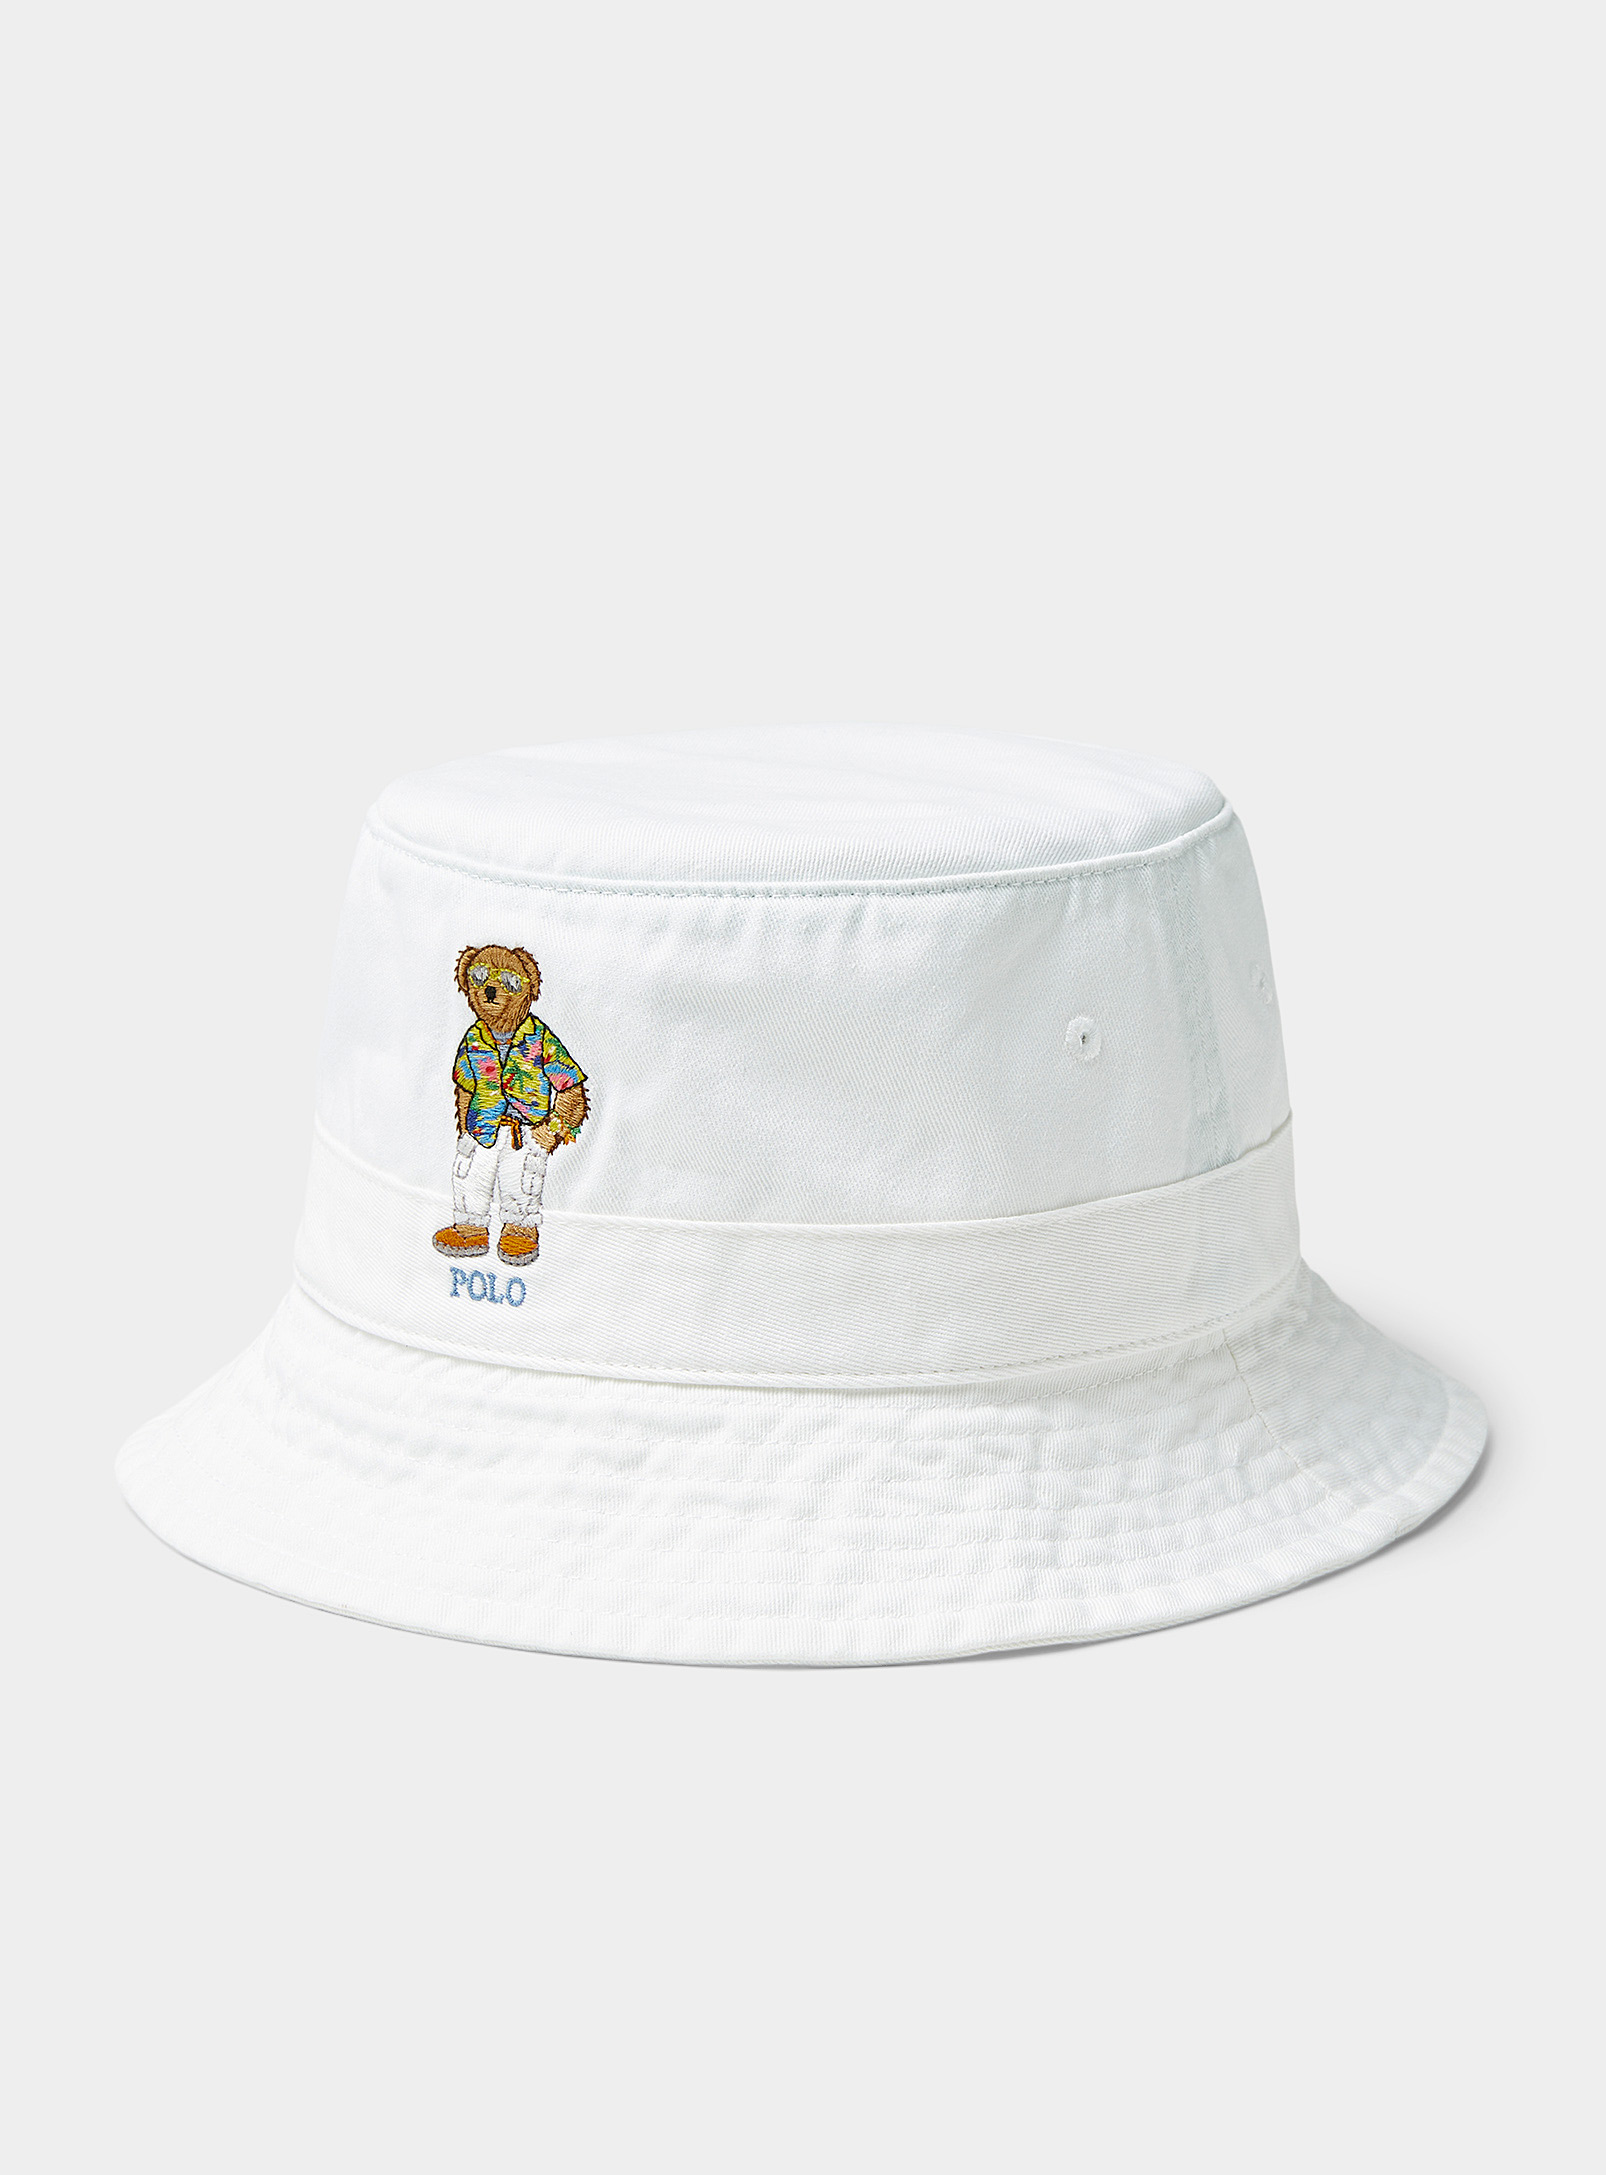 Polo Ralph Lauren - Men's Vacation teddy bucket hat